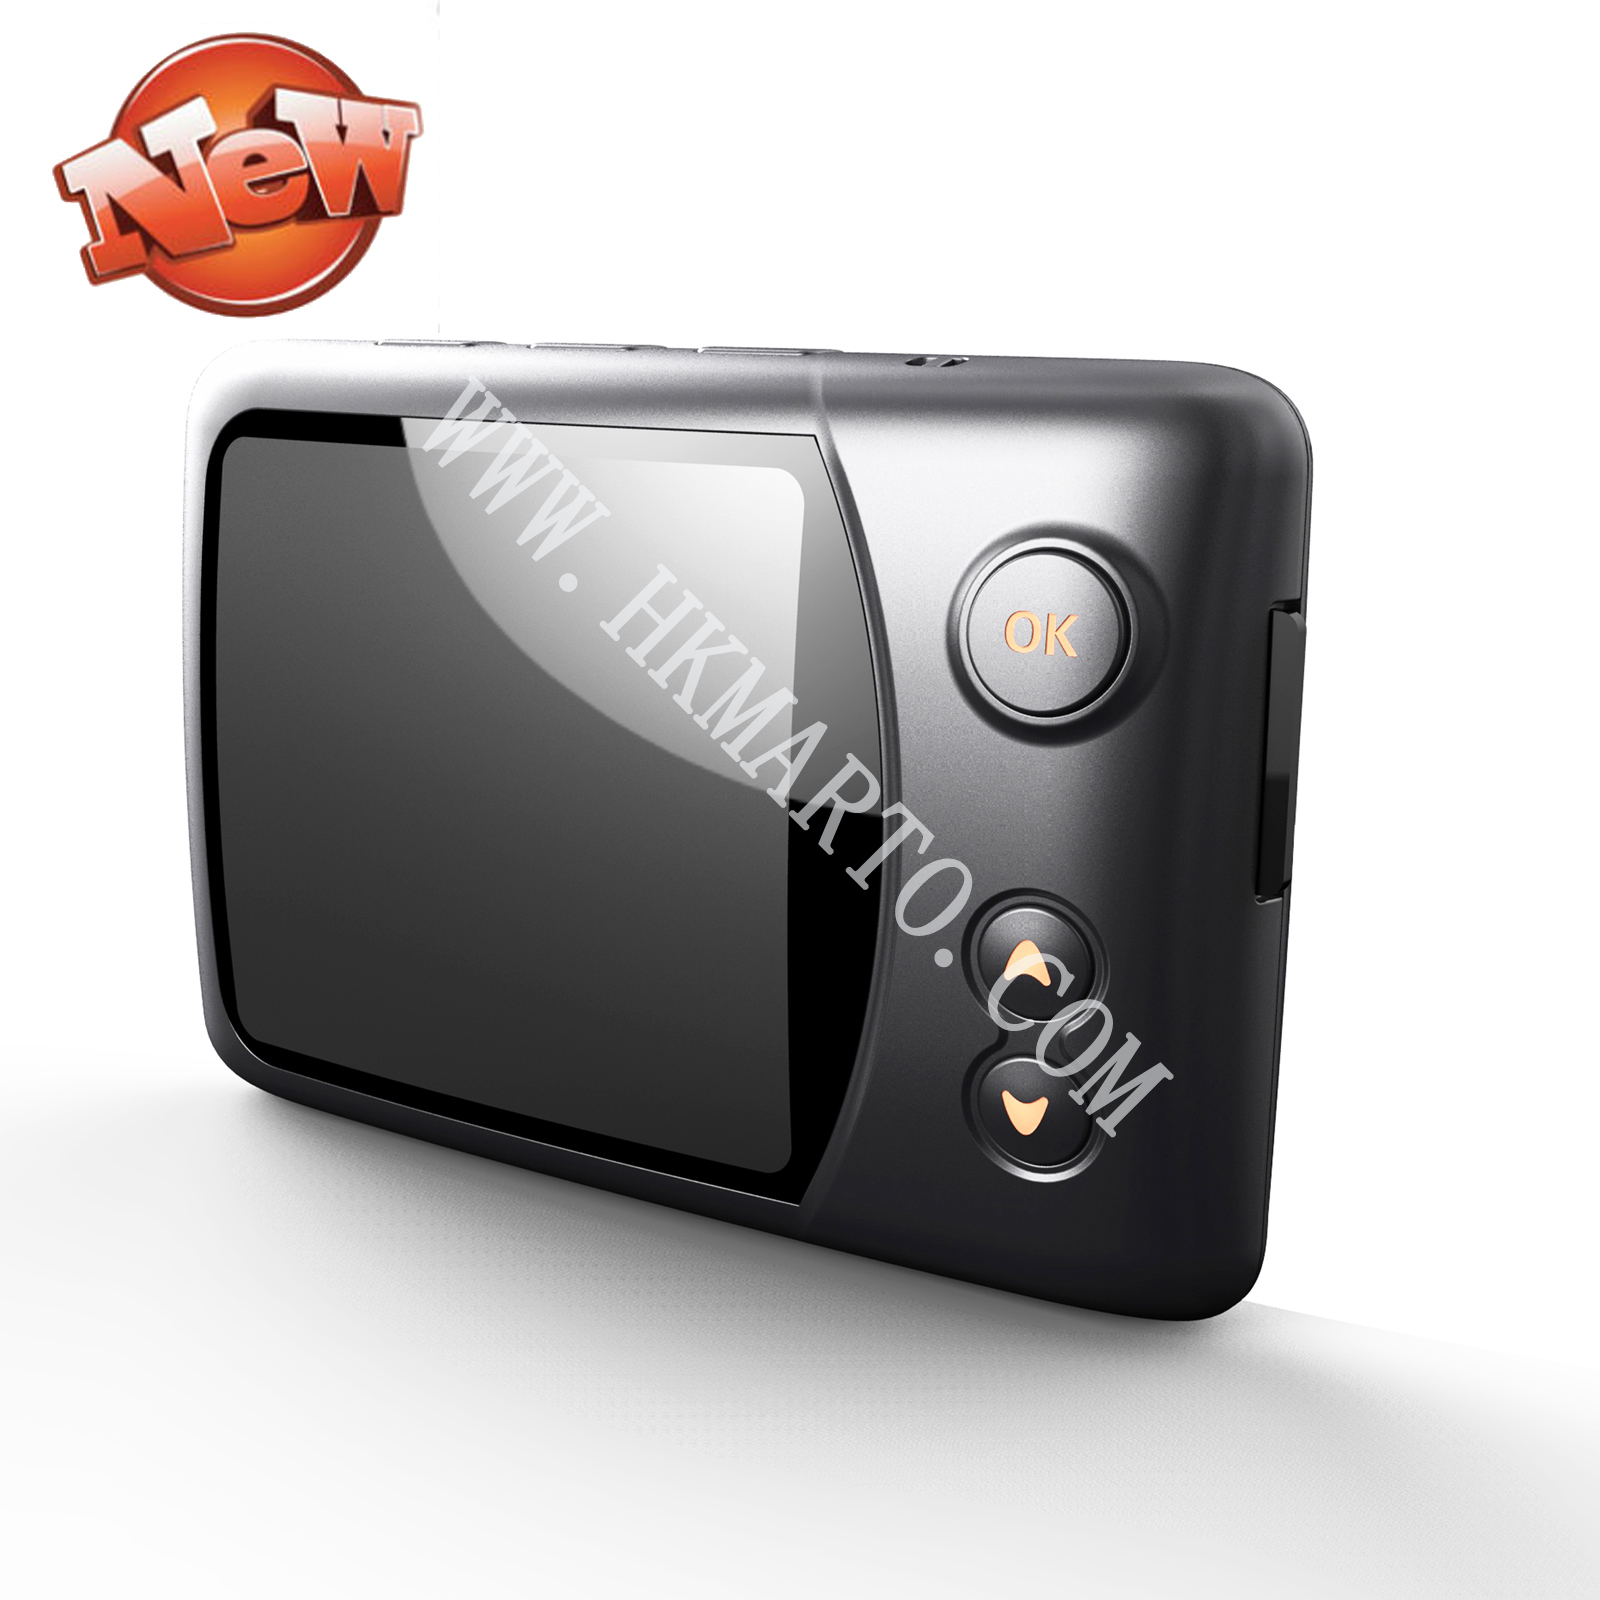 Новый автомобиль Modle T102B черный ящик / машина видеомагнитофон